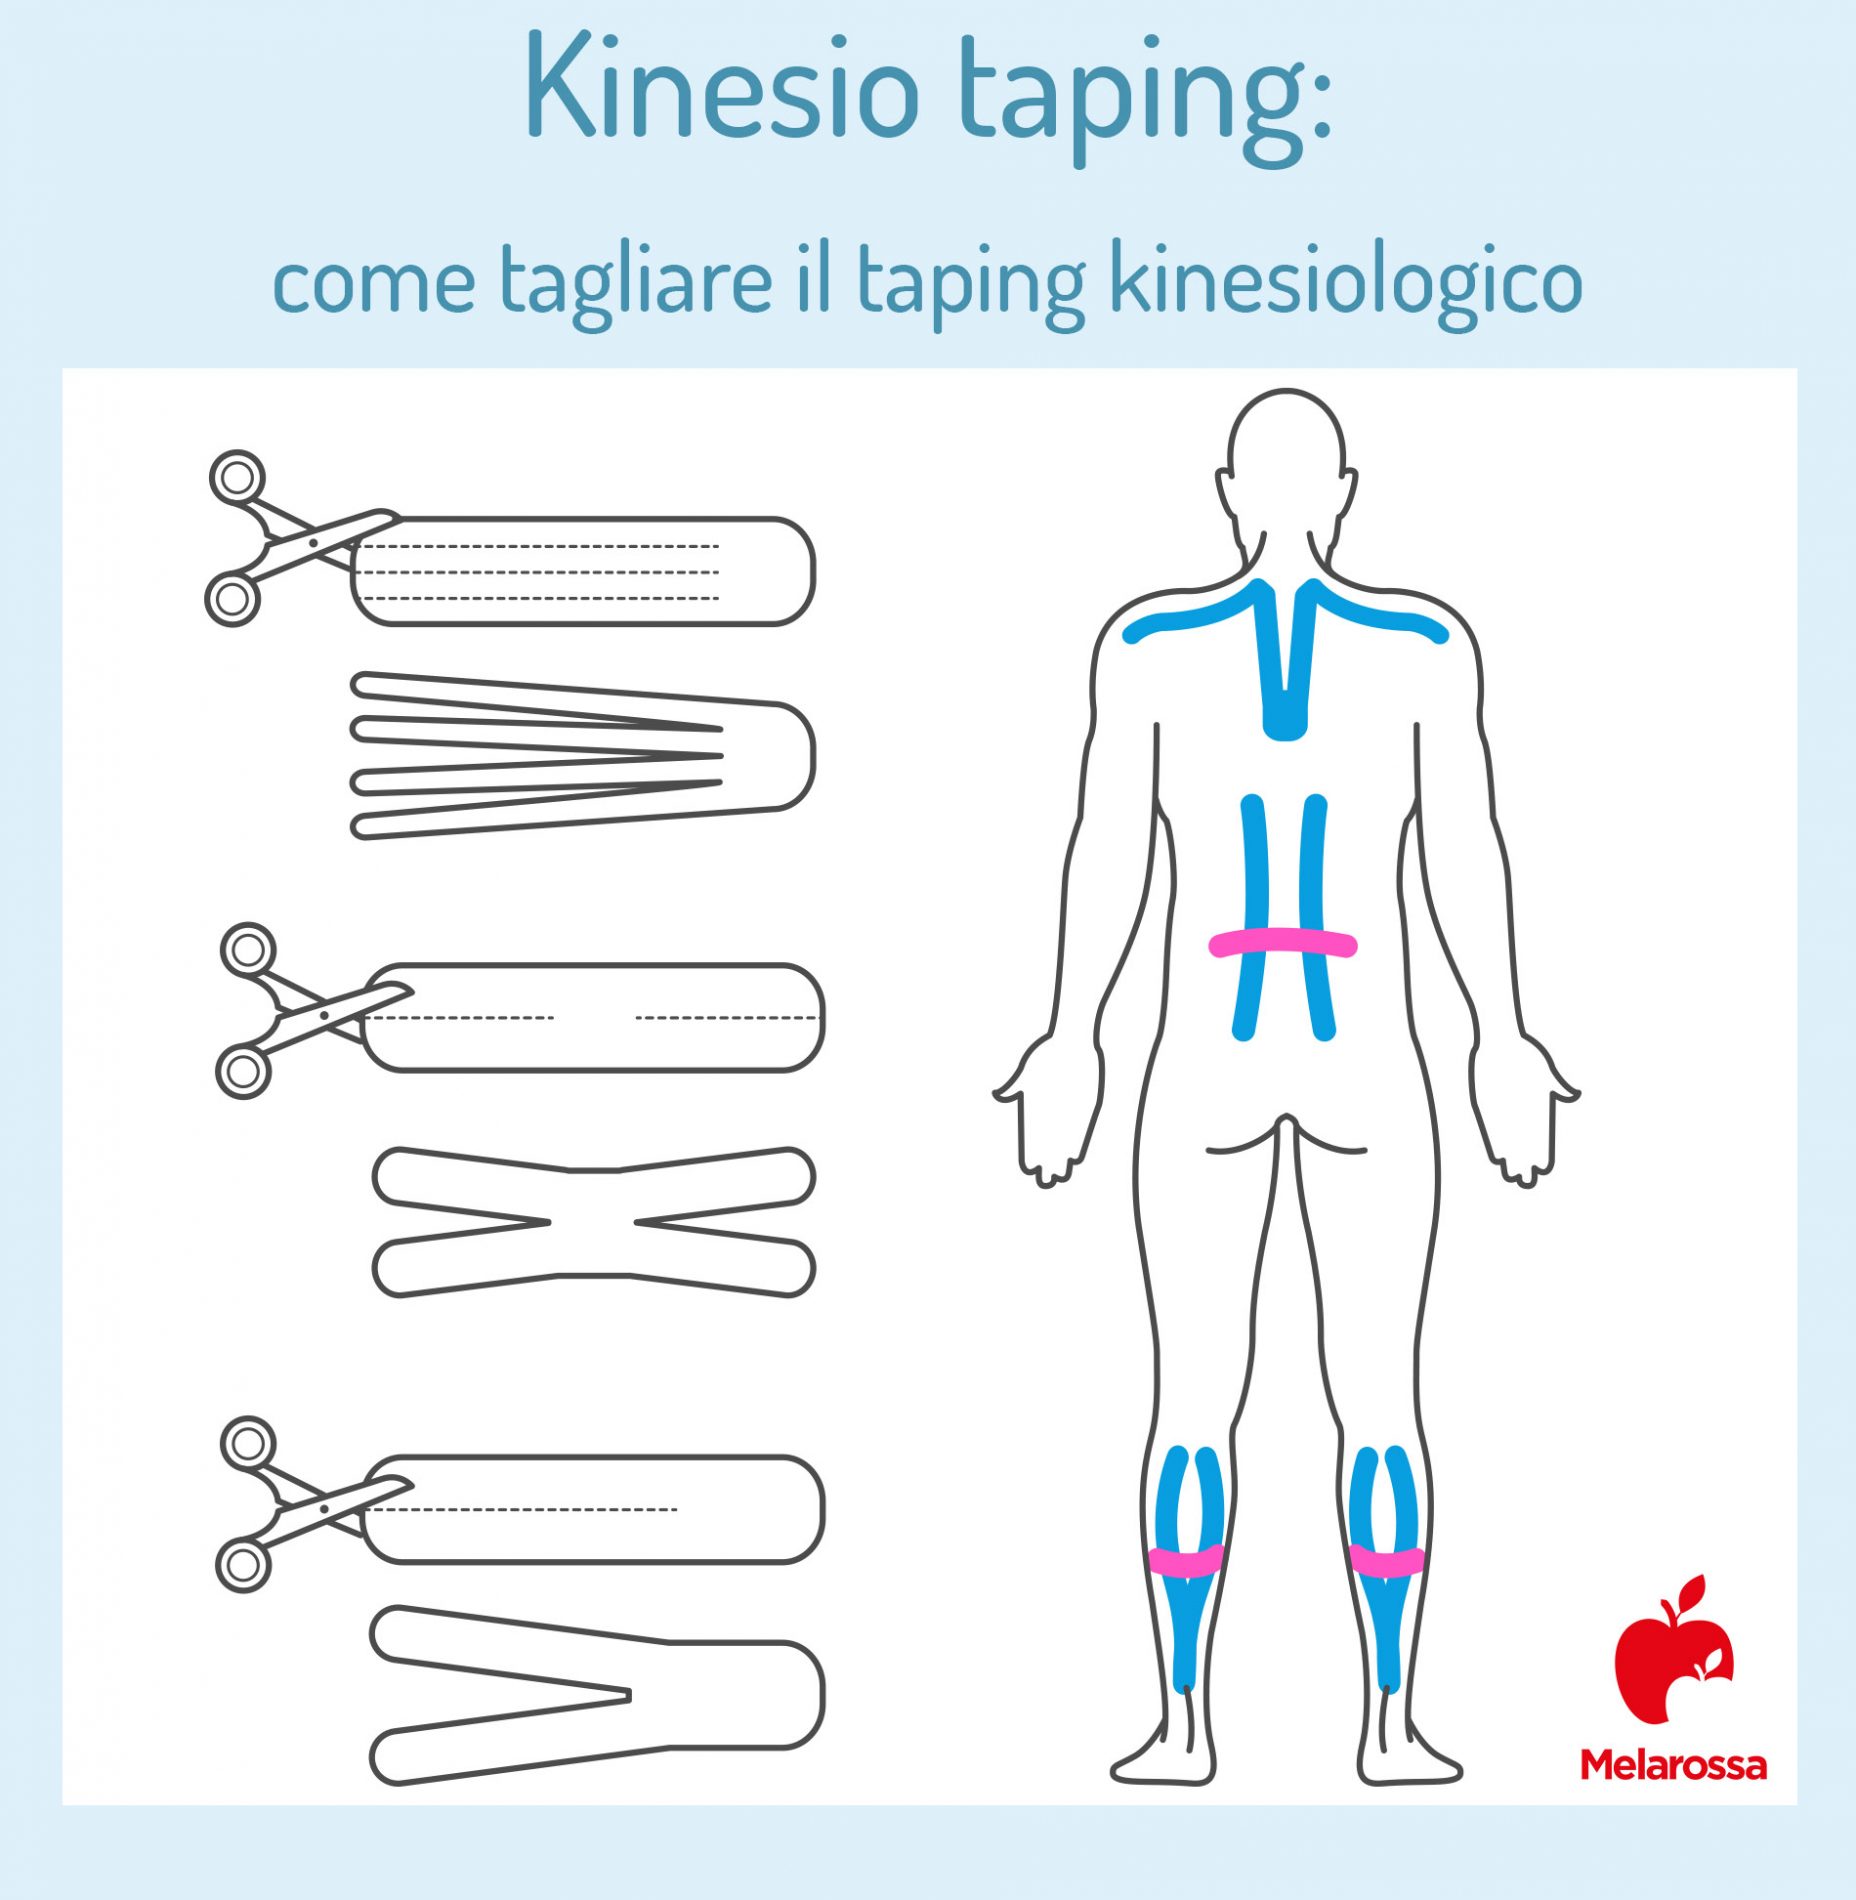 kinesio taping: come tagliare il taping kinesiologico